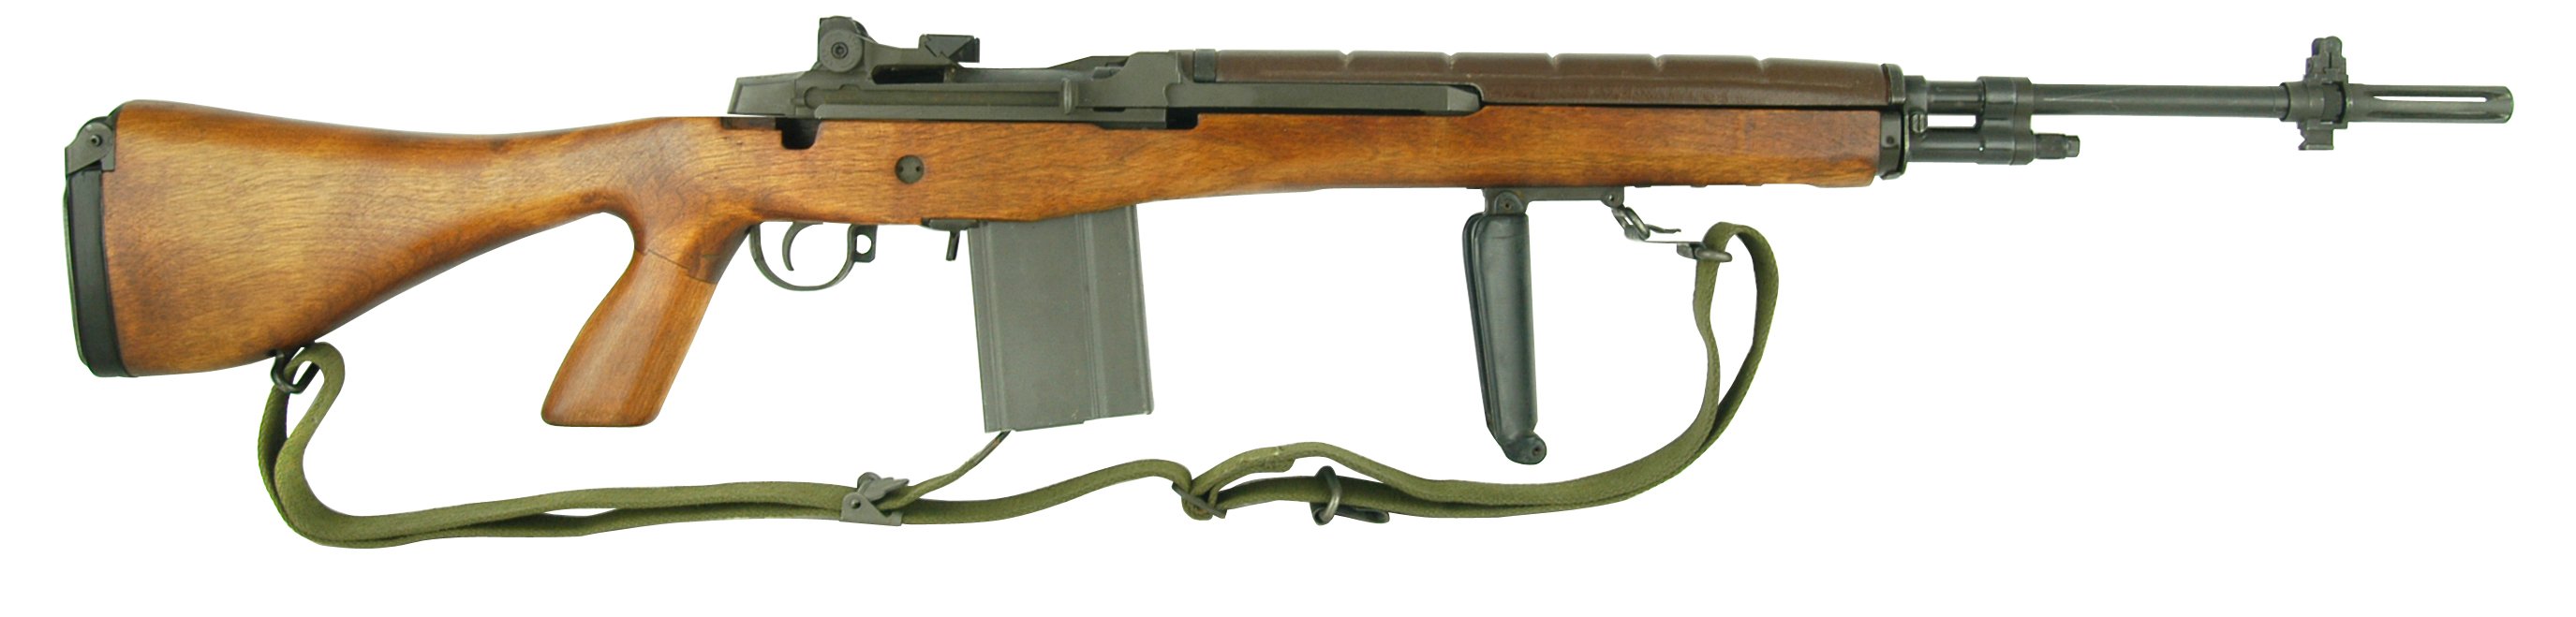 M14E2/M14A1.